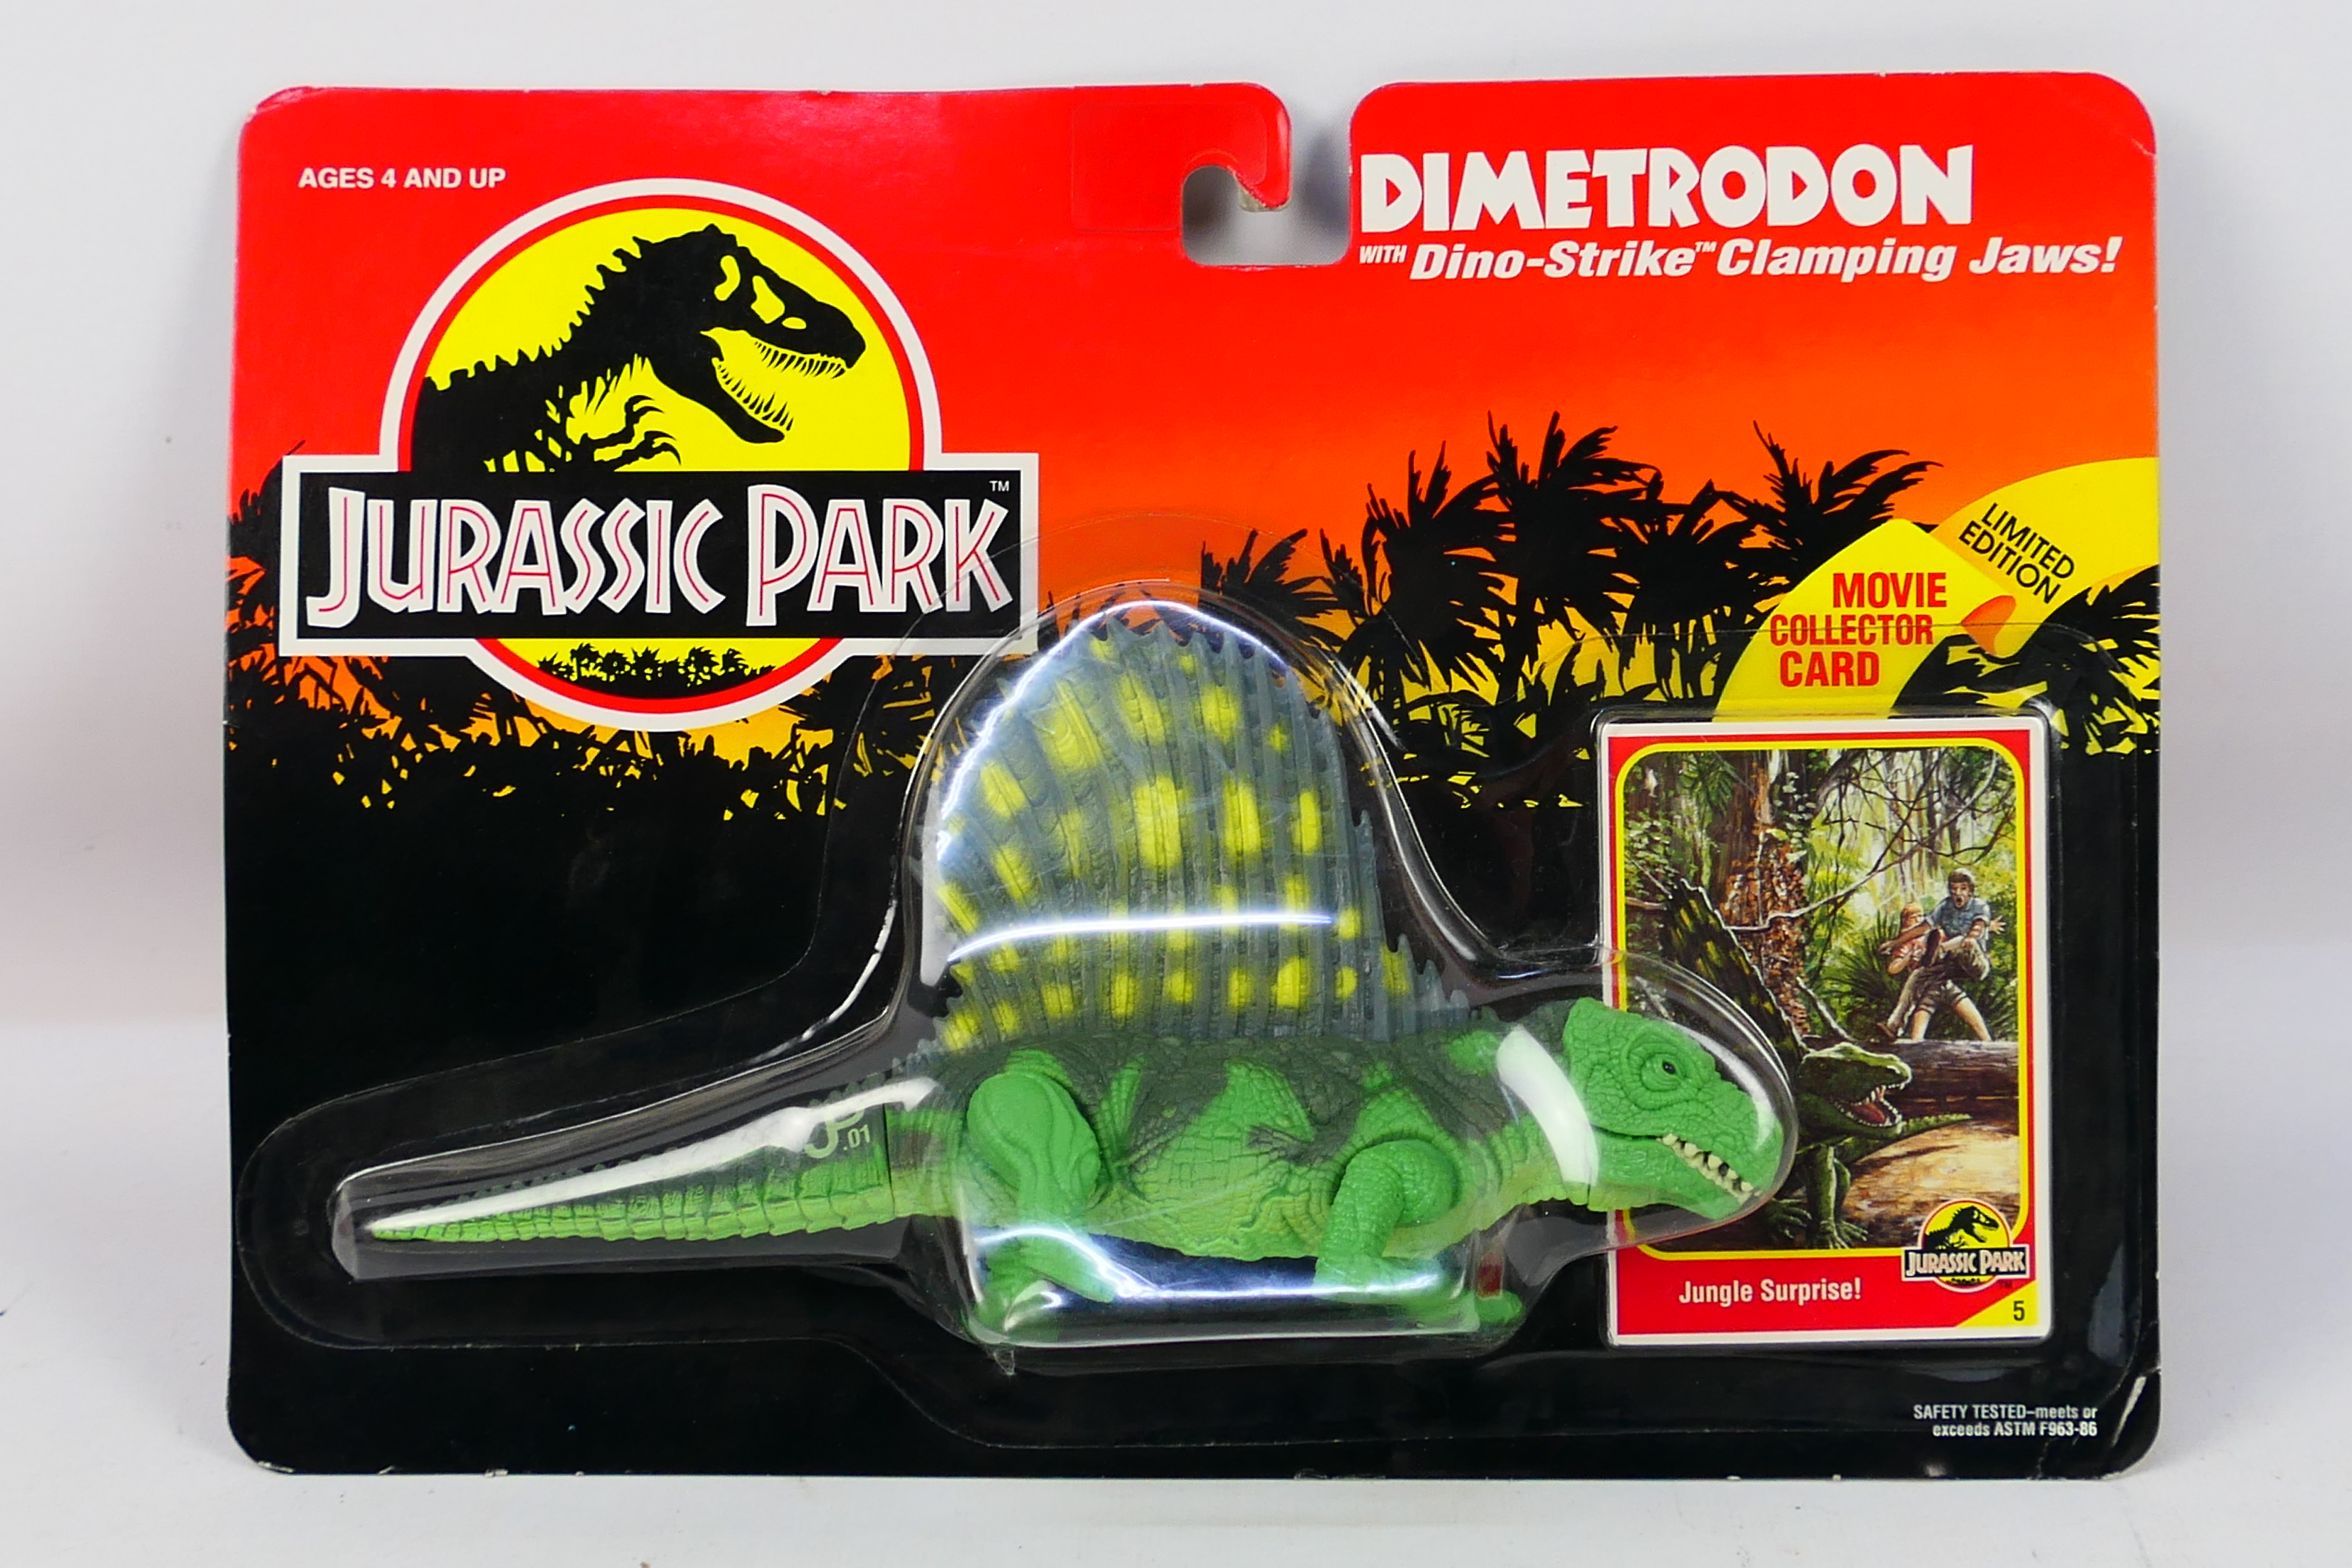 Kenner - Jurassic Park - A 1993 Blister packed figure of Dimetrodon from Jurassic Park.